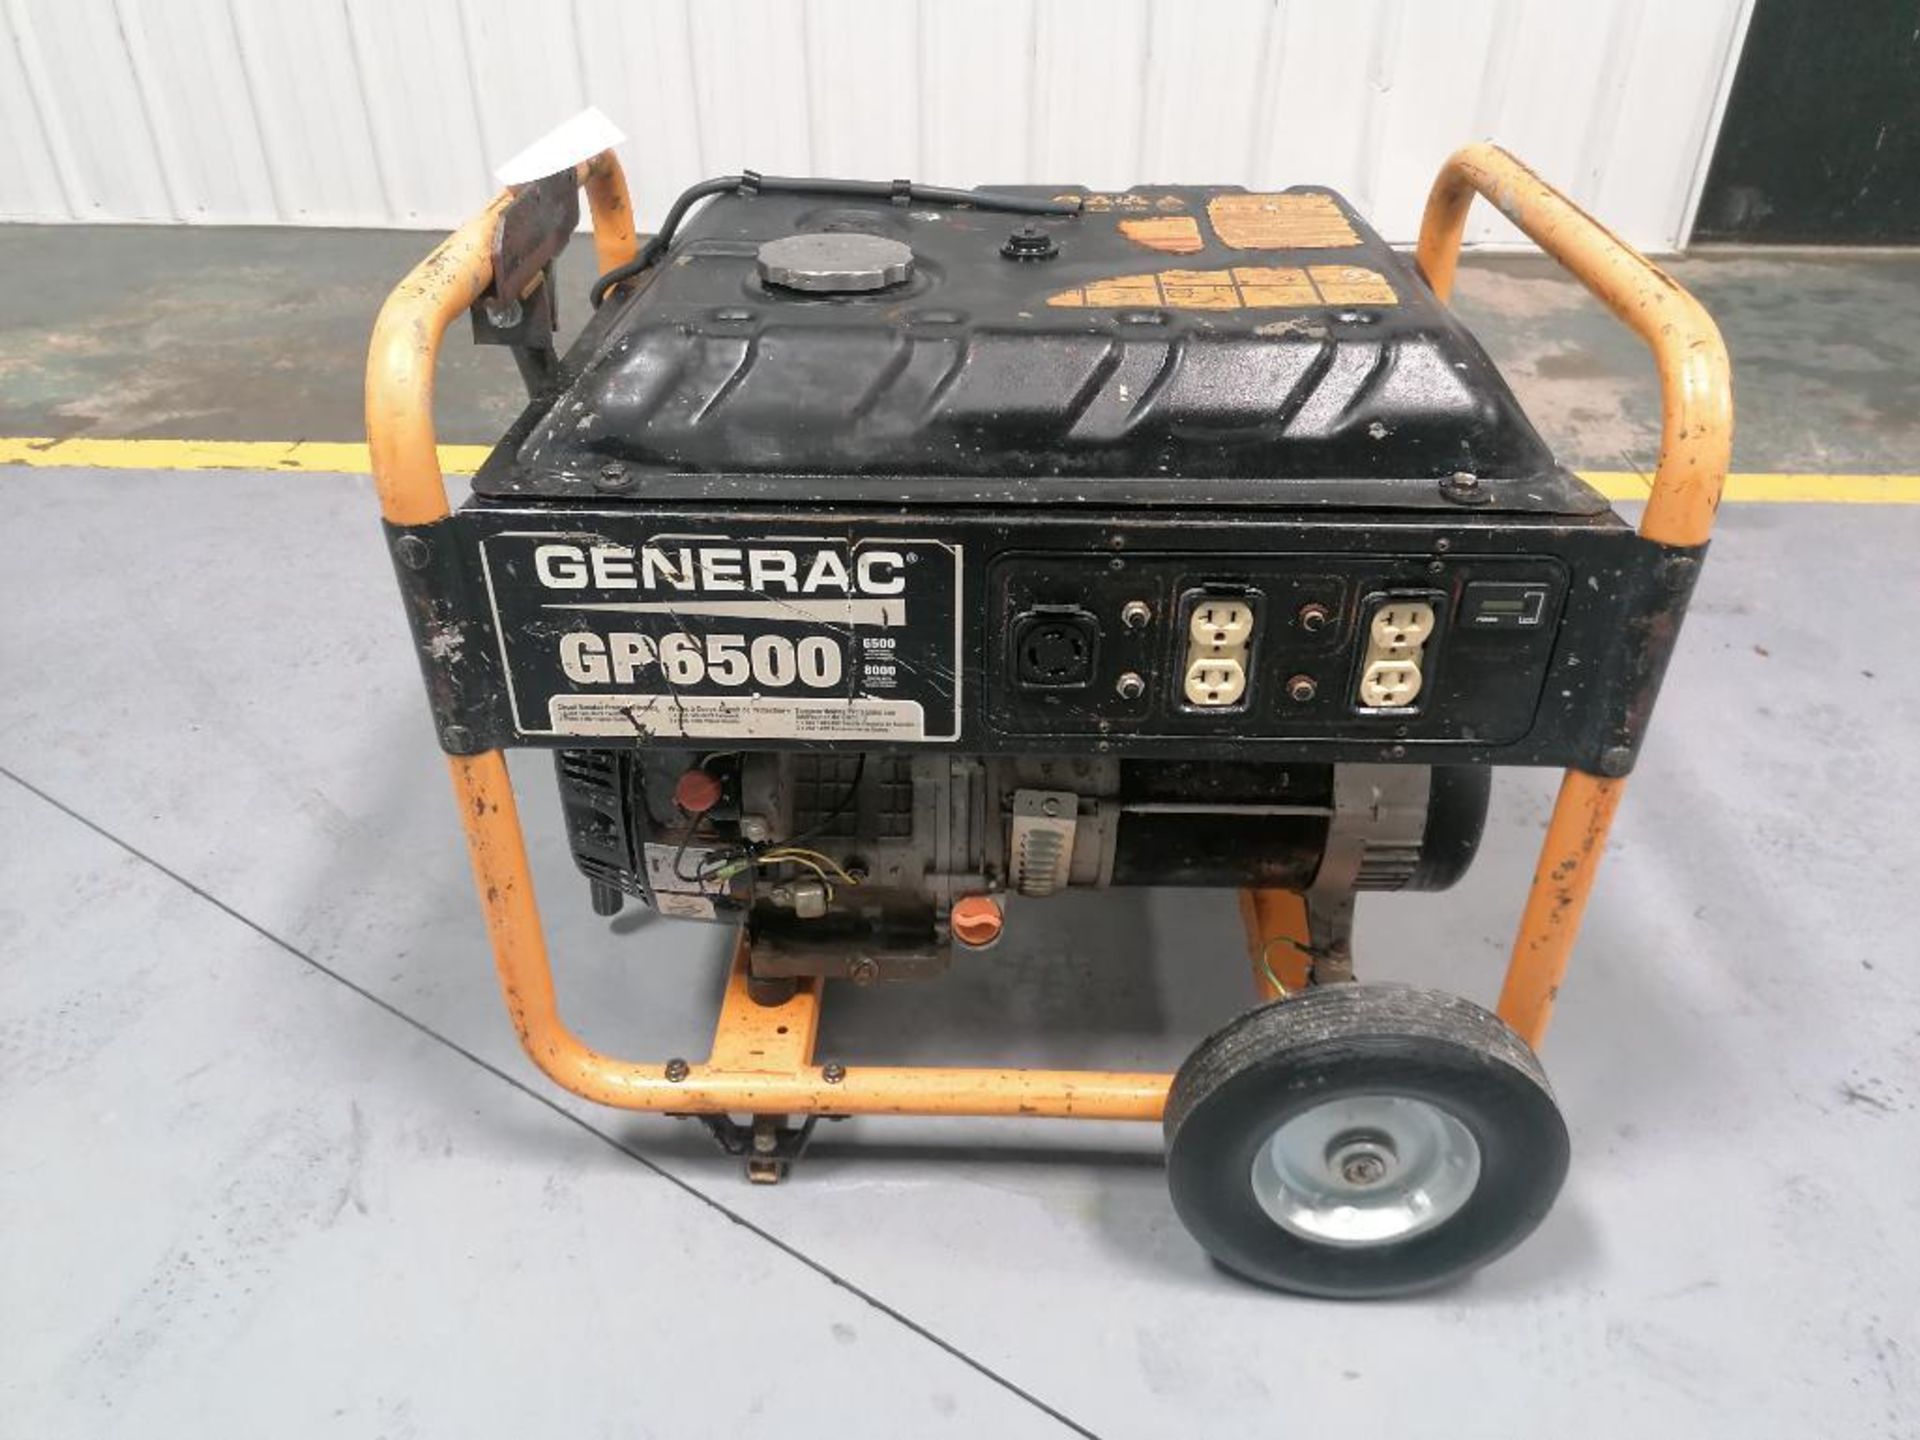 GENERAC GP6500 Generator. Located in Mt. Pleasant, IA. - Image 4 of 7